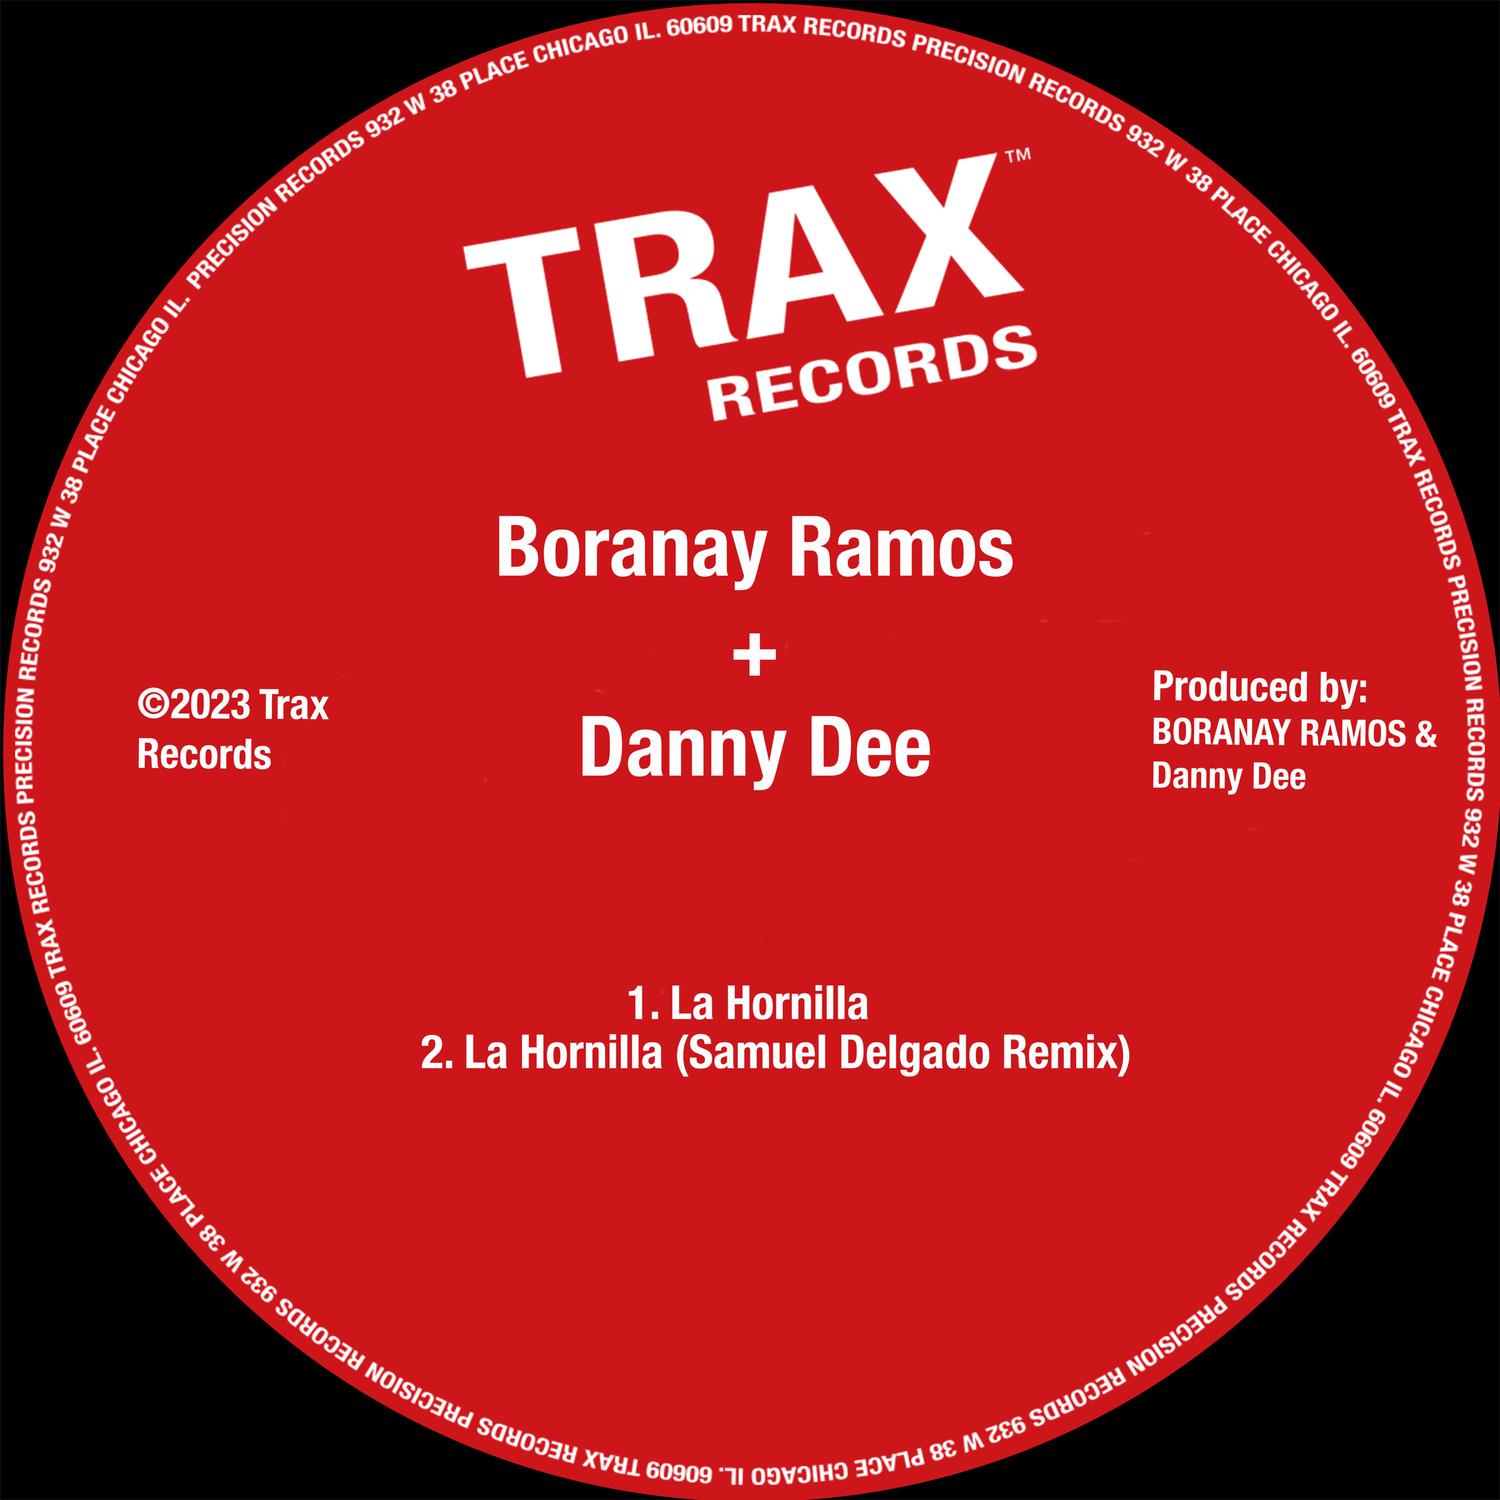 Boranay Ramos - La Hornilla (Samuel Delgado Remix)